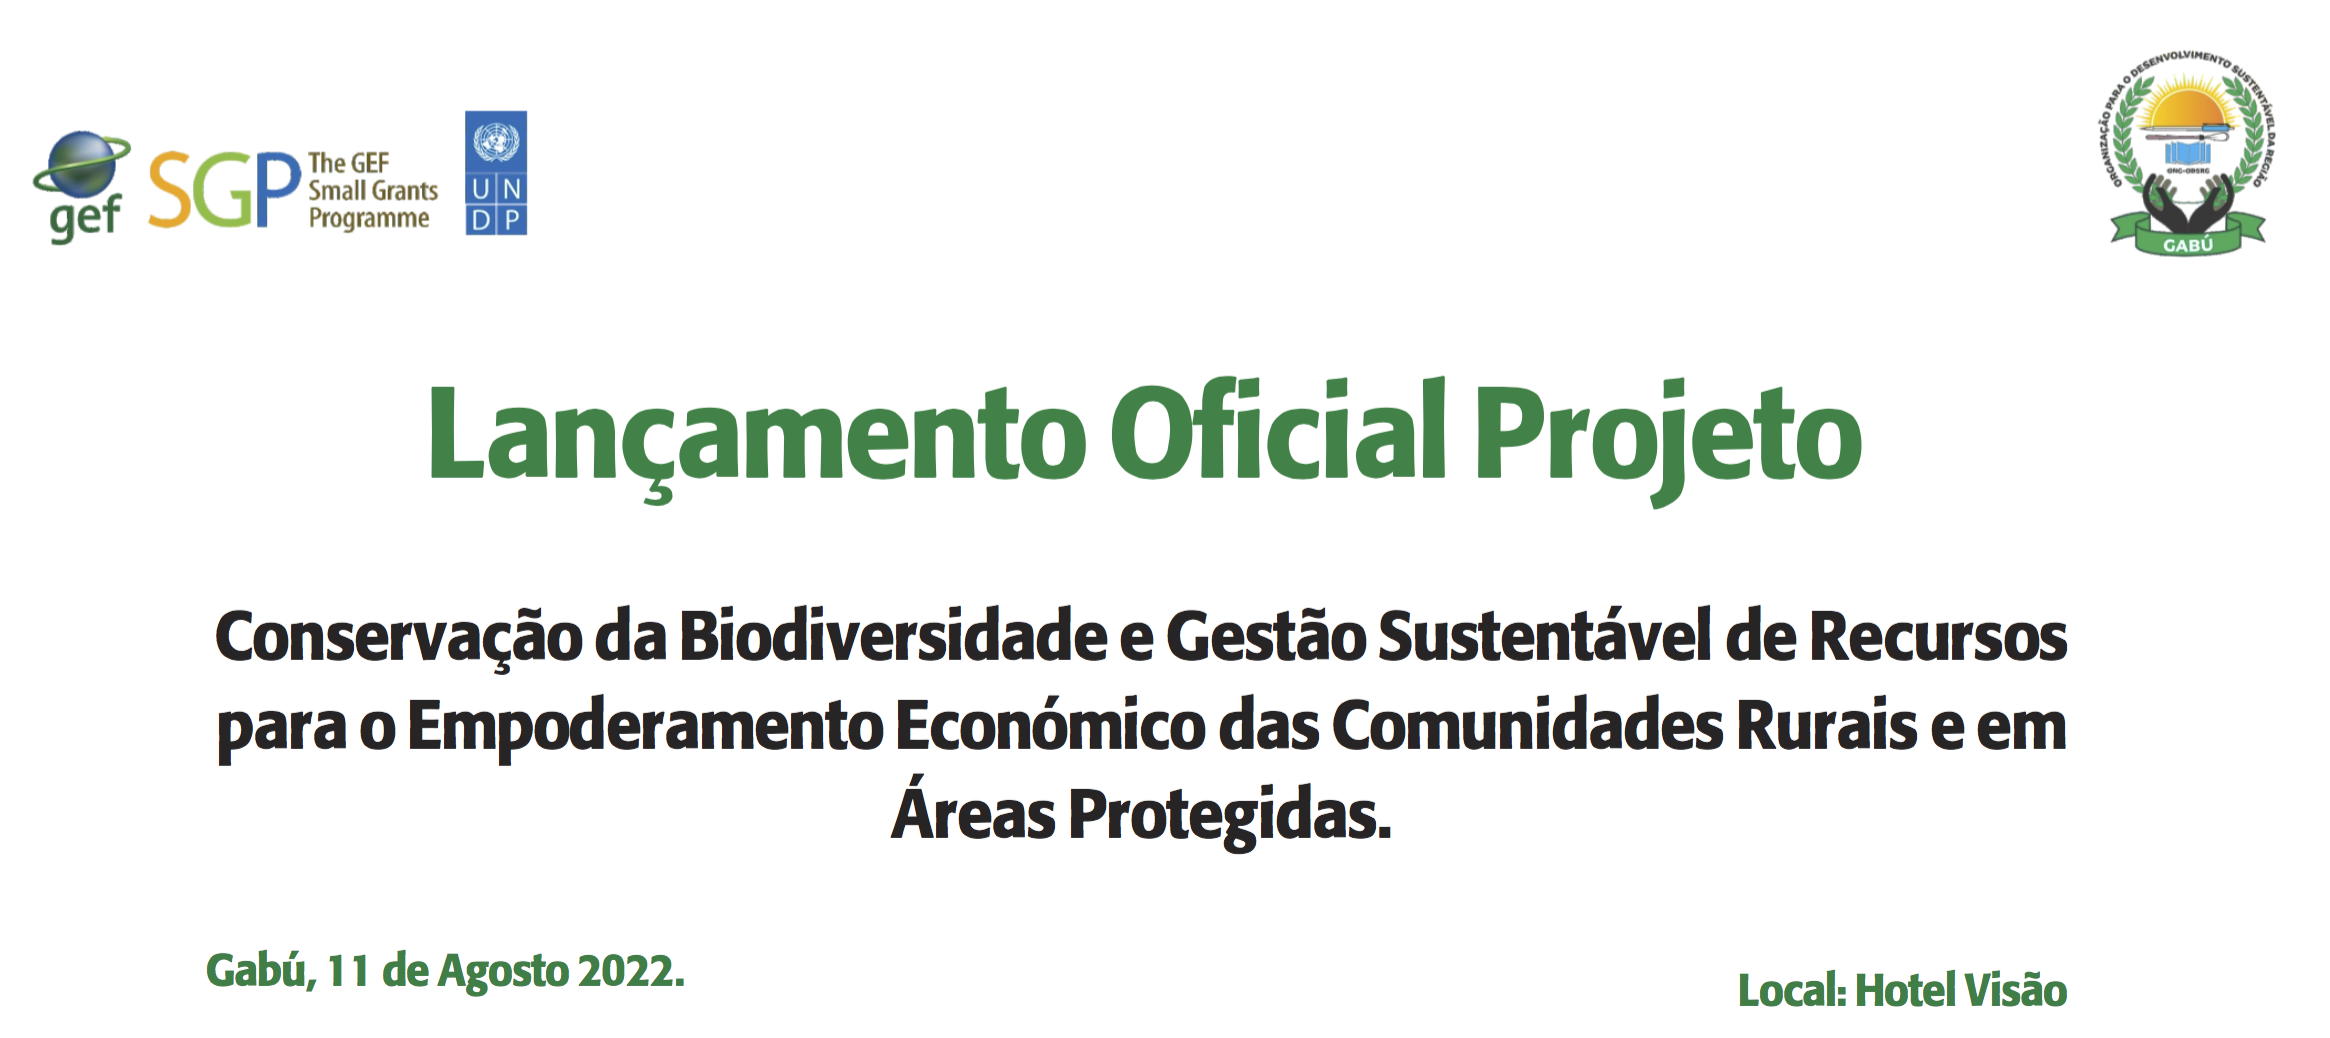 Lançamento do Projecto Conservação da Biodiversidade